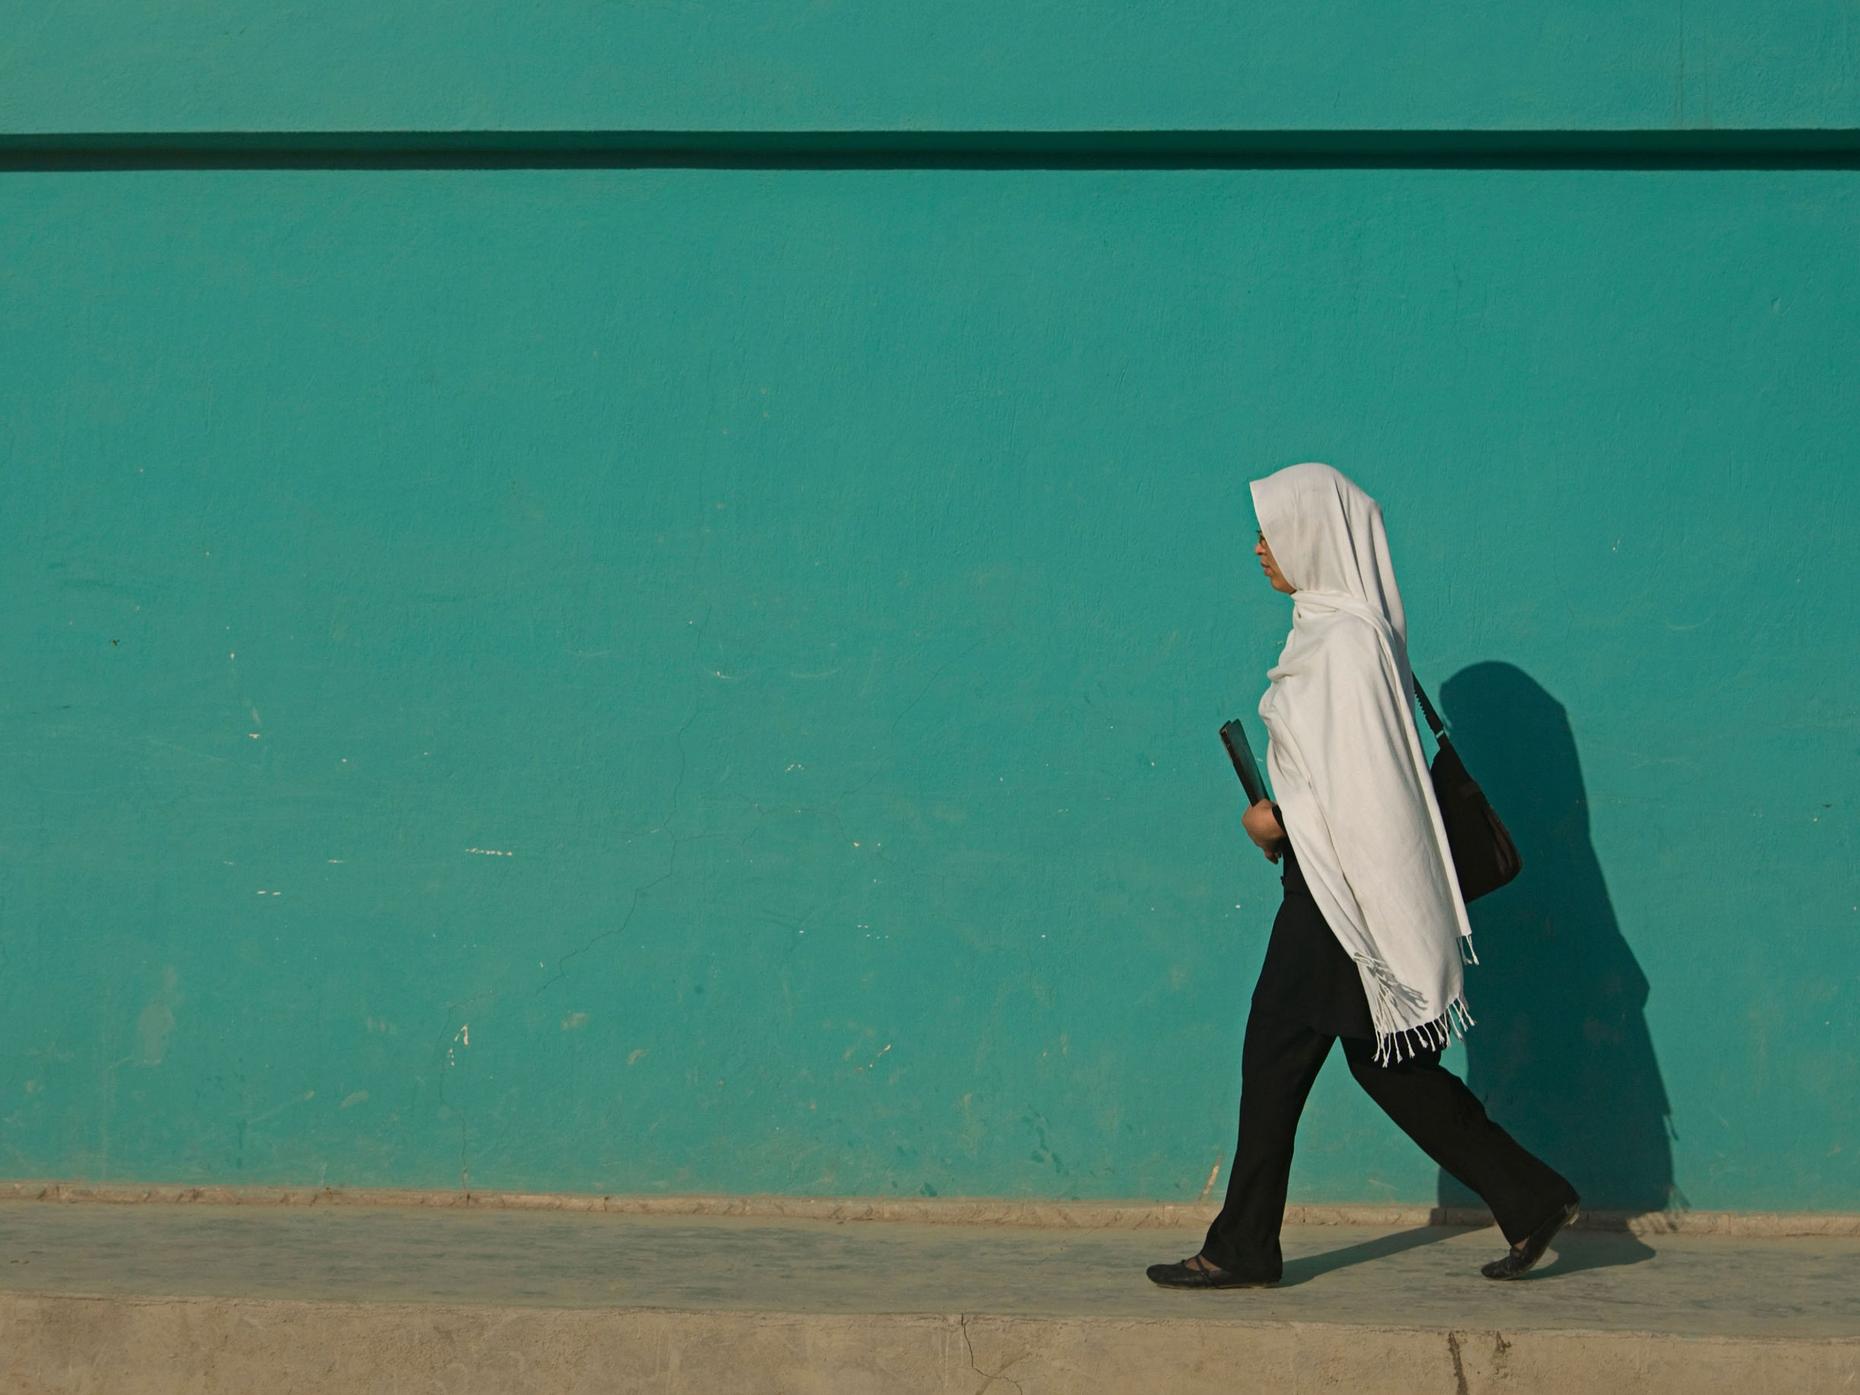 तालिबानको पुर्नरागमनपछि अफगानिस्तानमा पहिलो महिला बोर्डिङ स्कुल बन्द, छात्राहरूको दस्तावेज जलाइयो